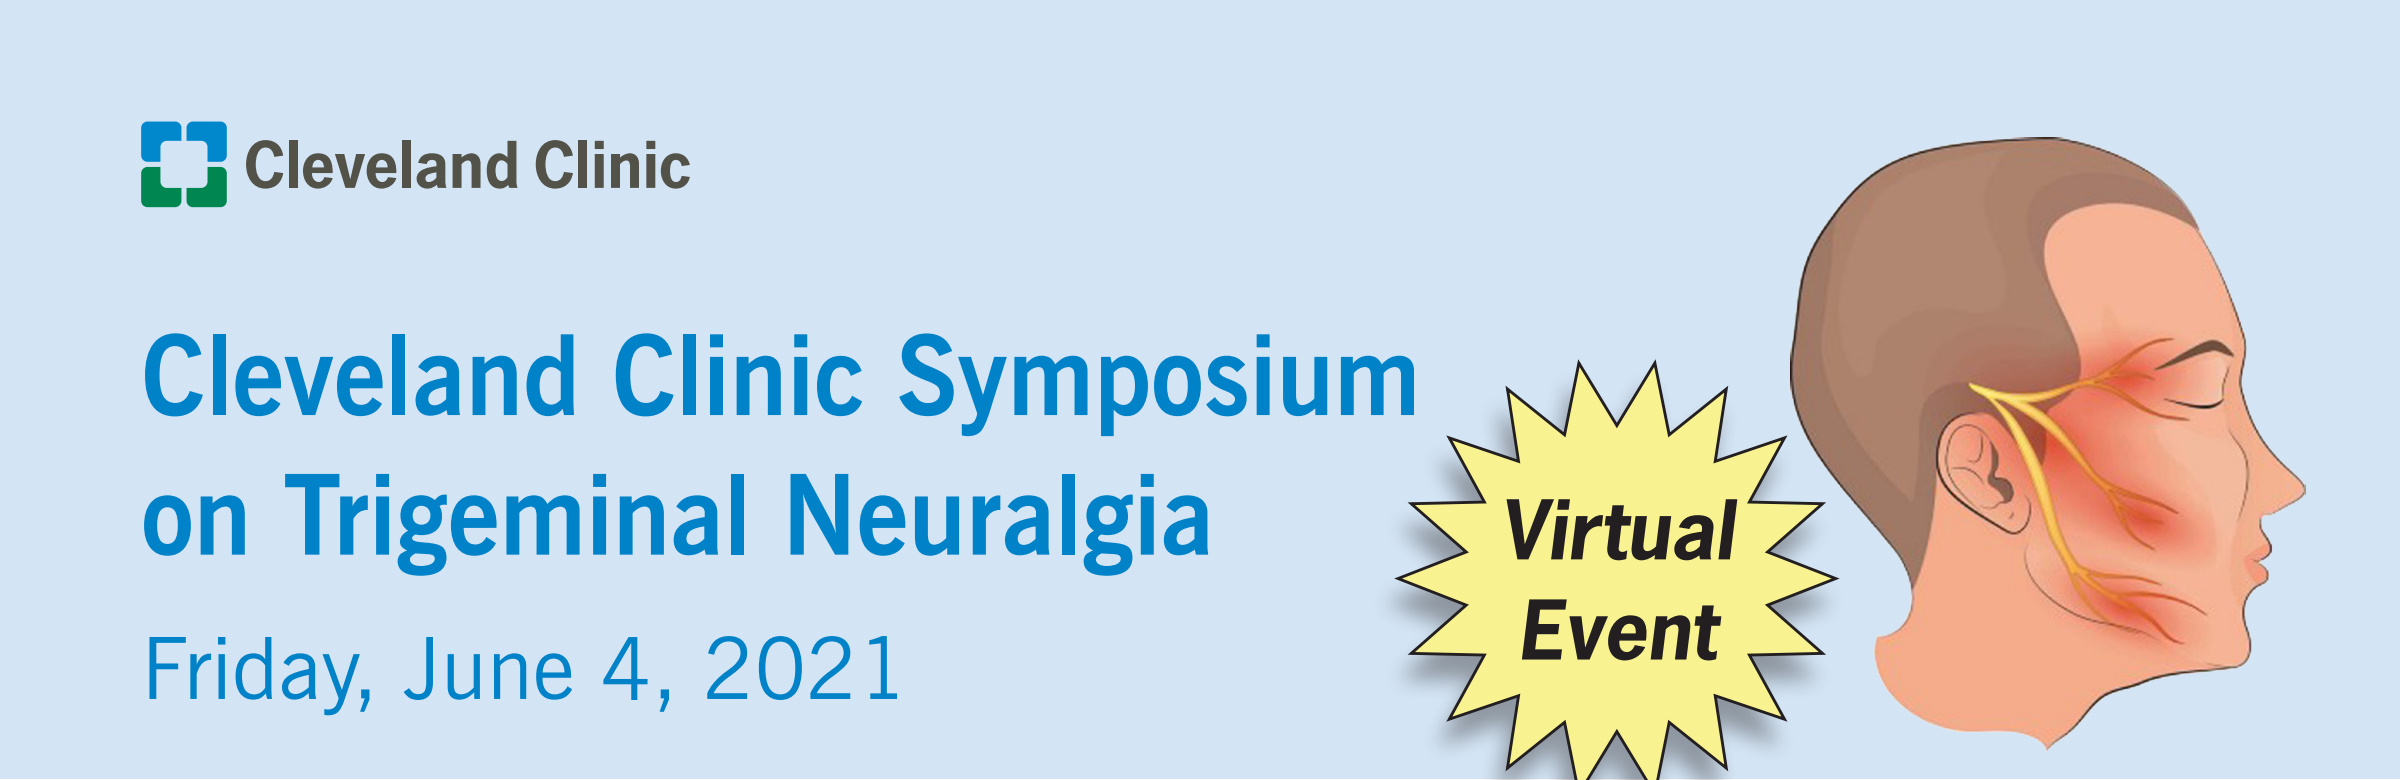 Cleveland Clinic Symposium on Trigeminal Neuralgia 2021